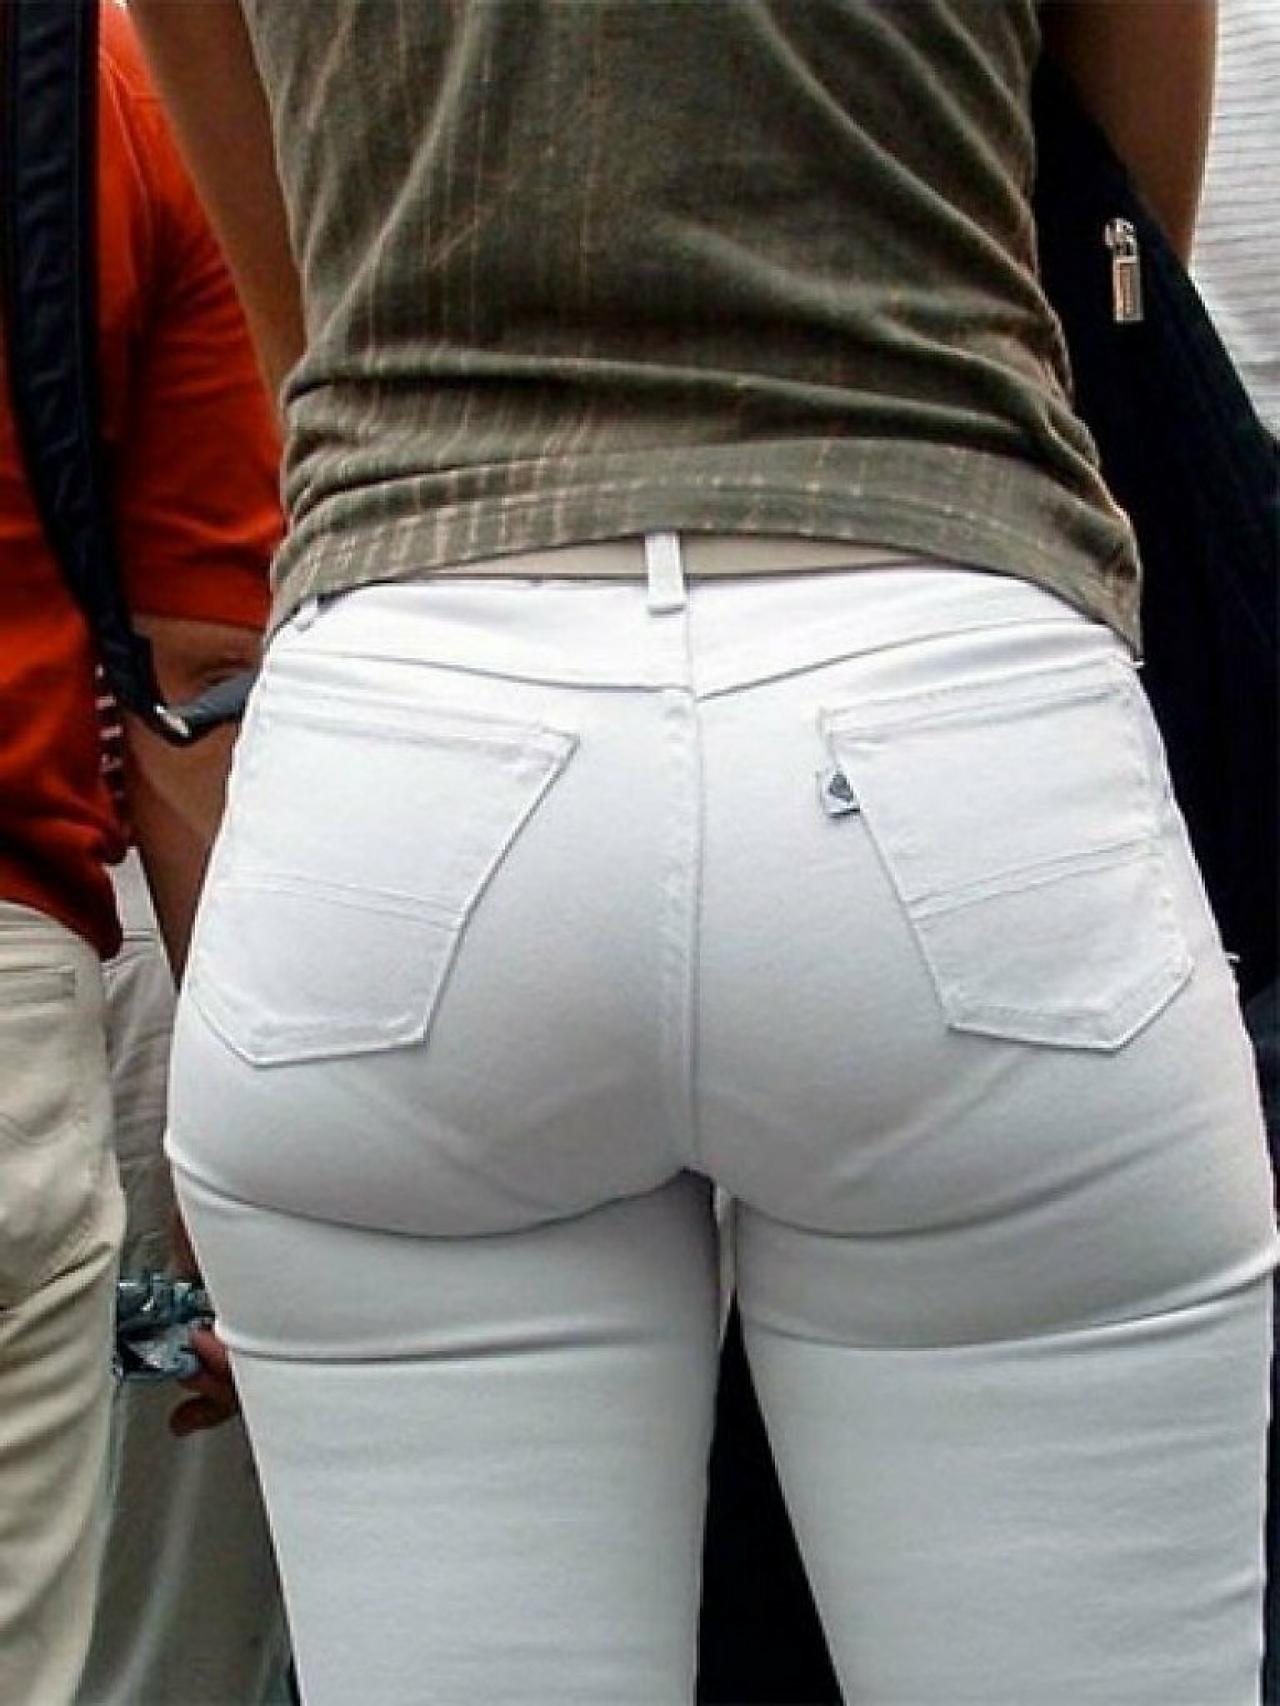 Плотный выделяться. Visible panty lines (VPL) брюки. Трусы под брюками.